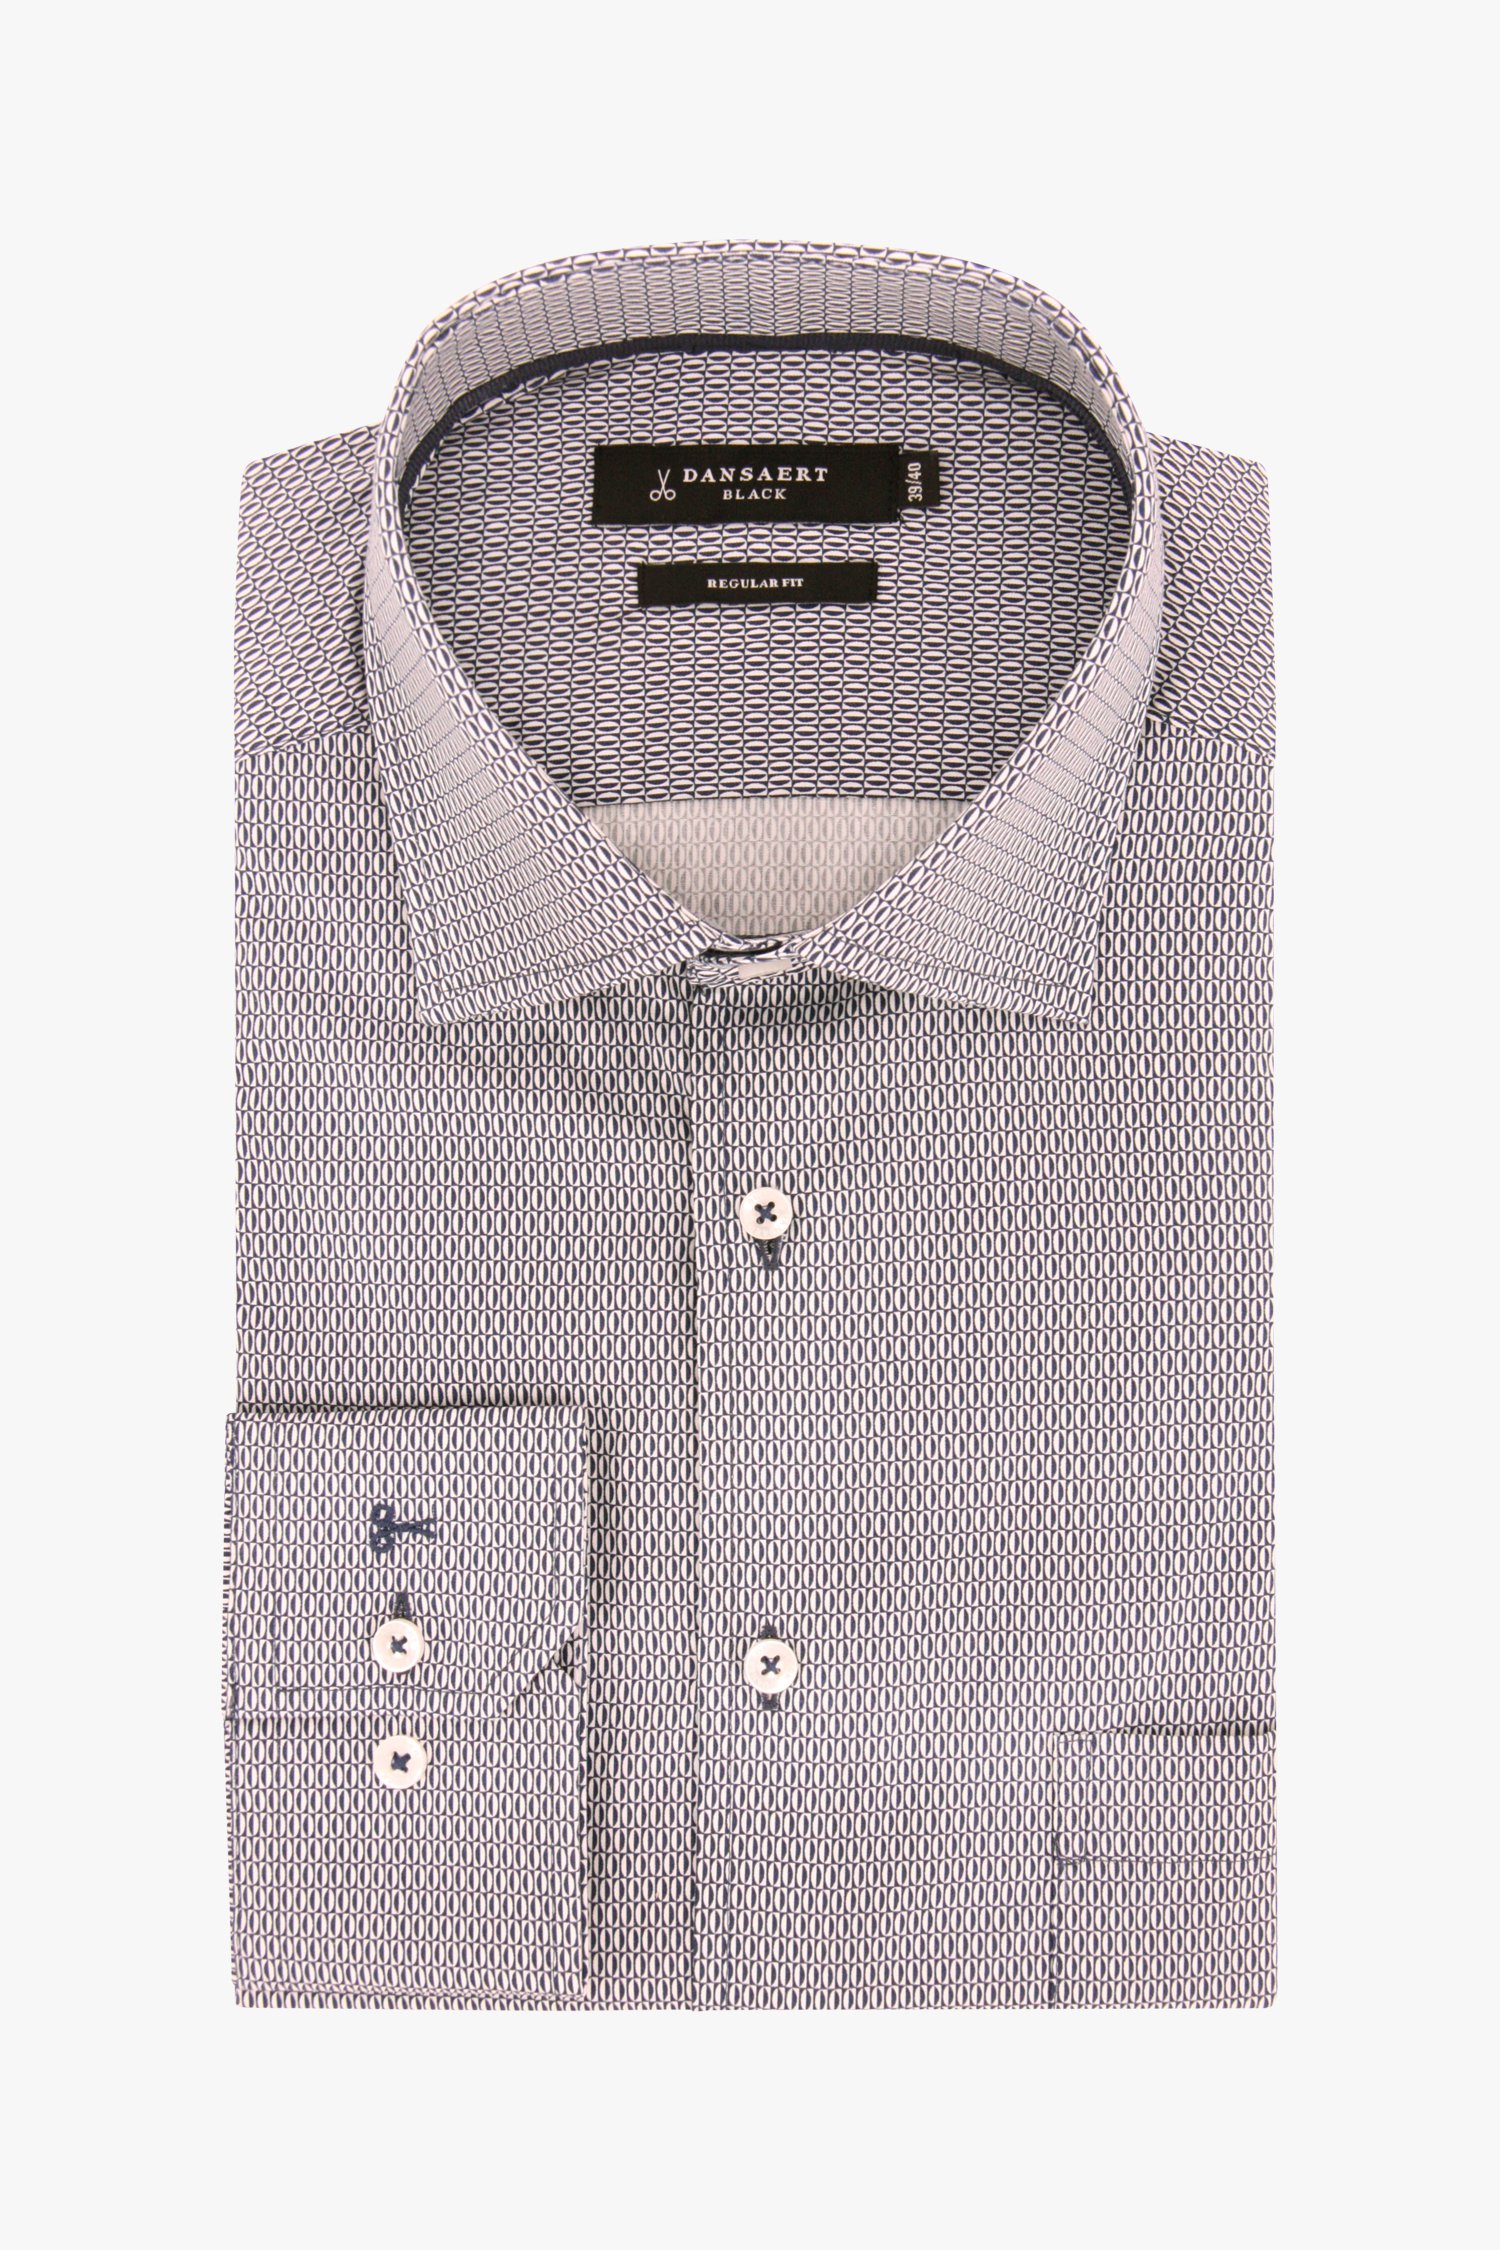 Hemd met donkerblauw-wit patroon - regular fit van Dansaert Black voor Heren